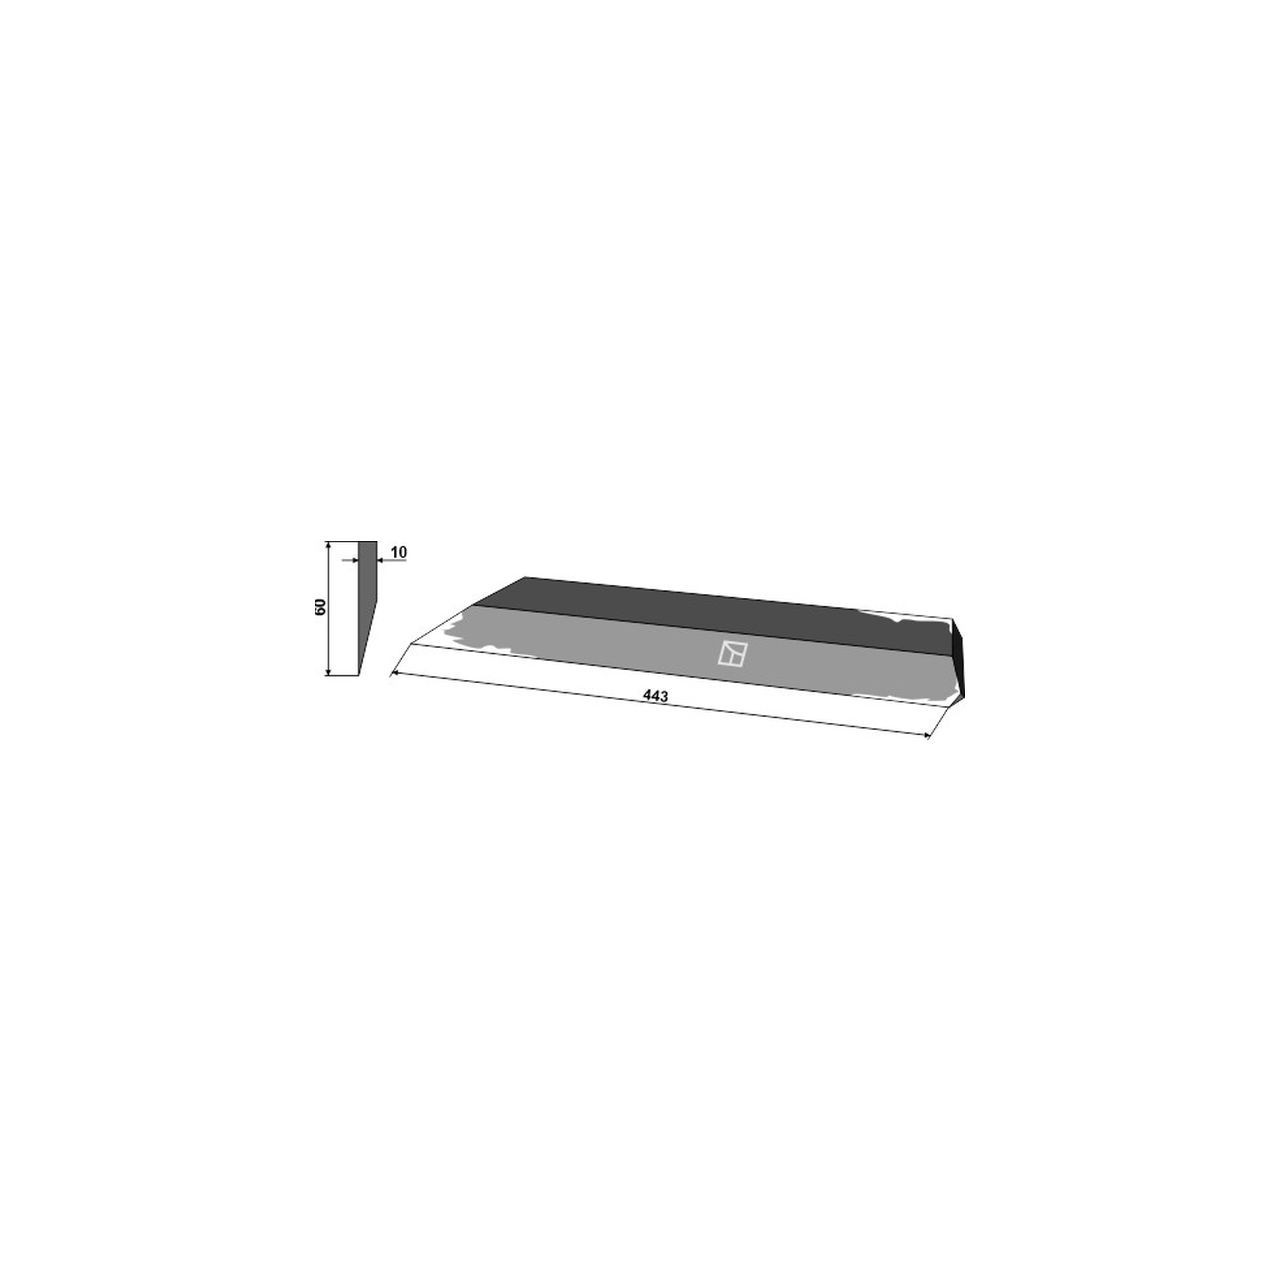 Nóż boczny 443mm - prawy AGROSTROJ 5002393